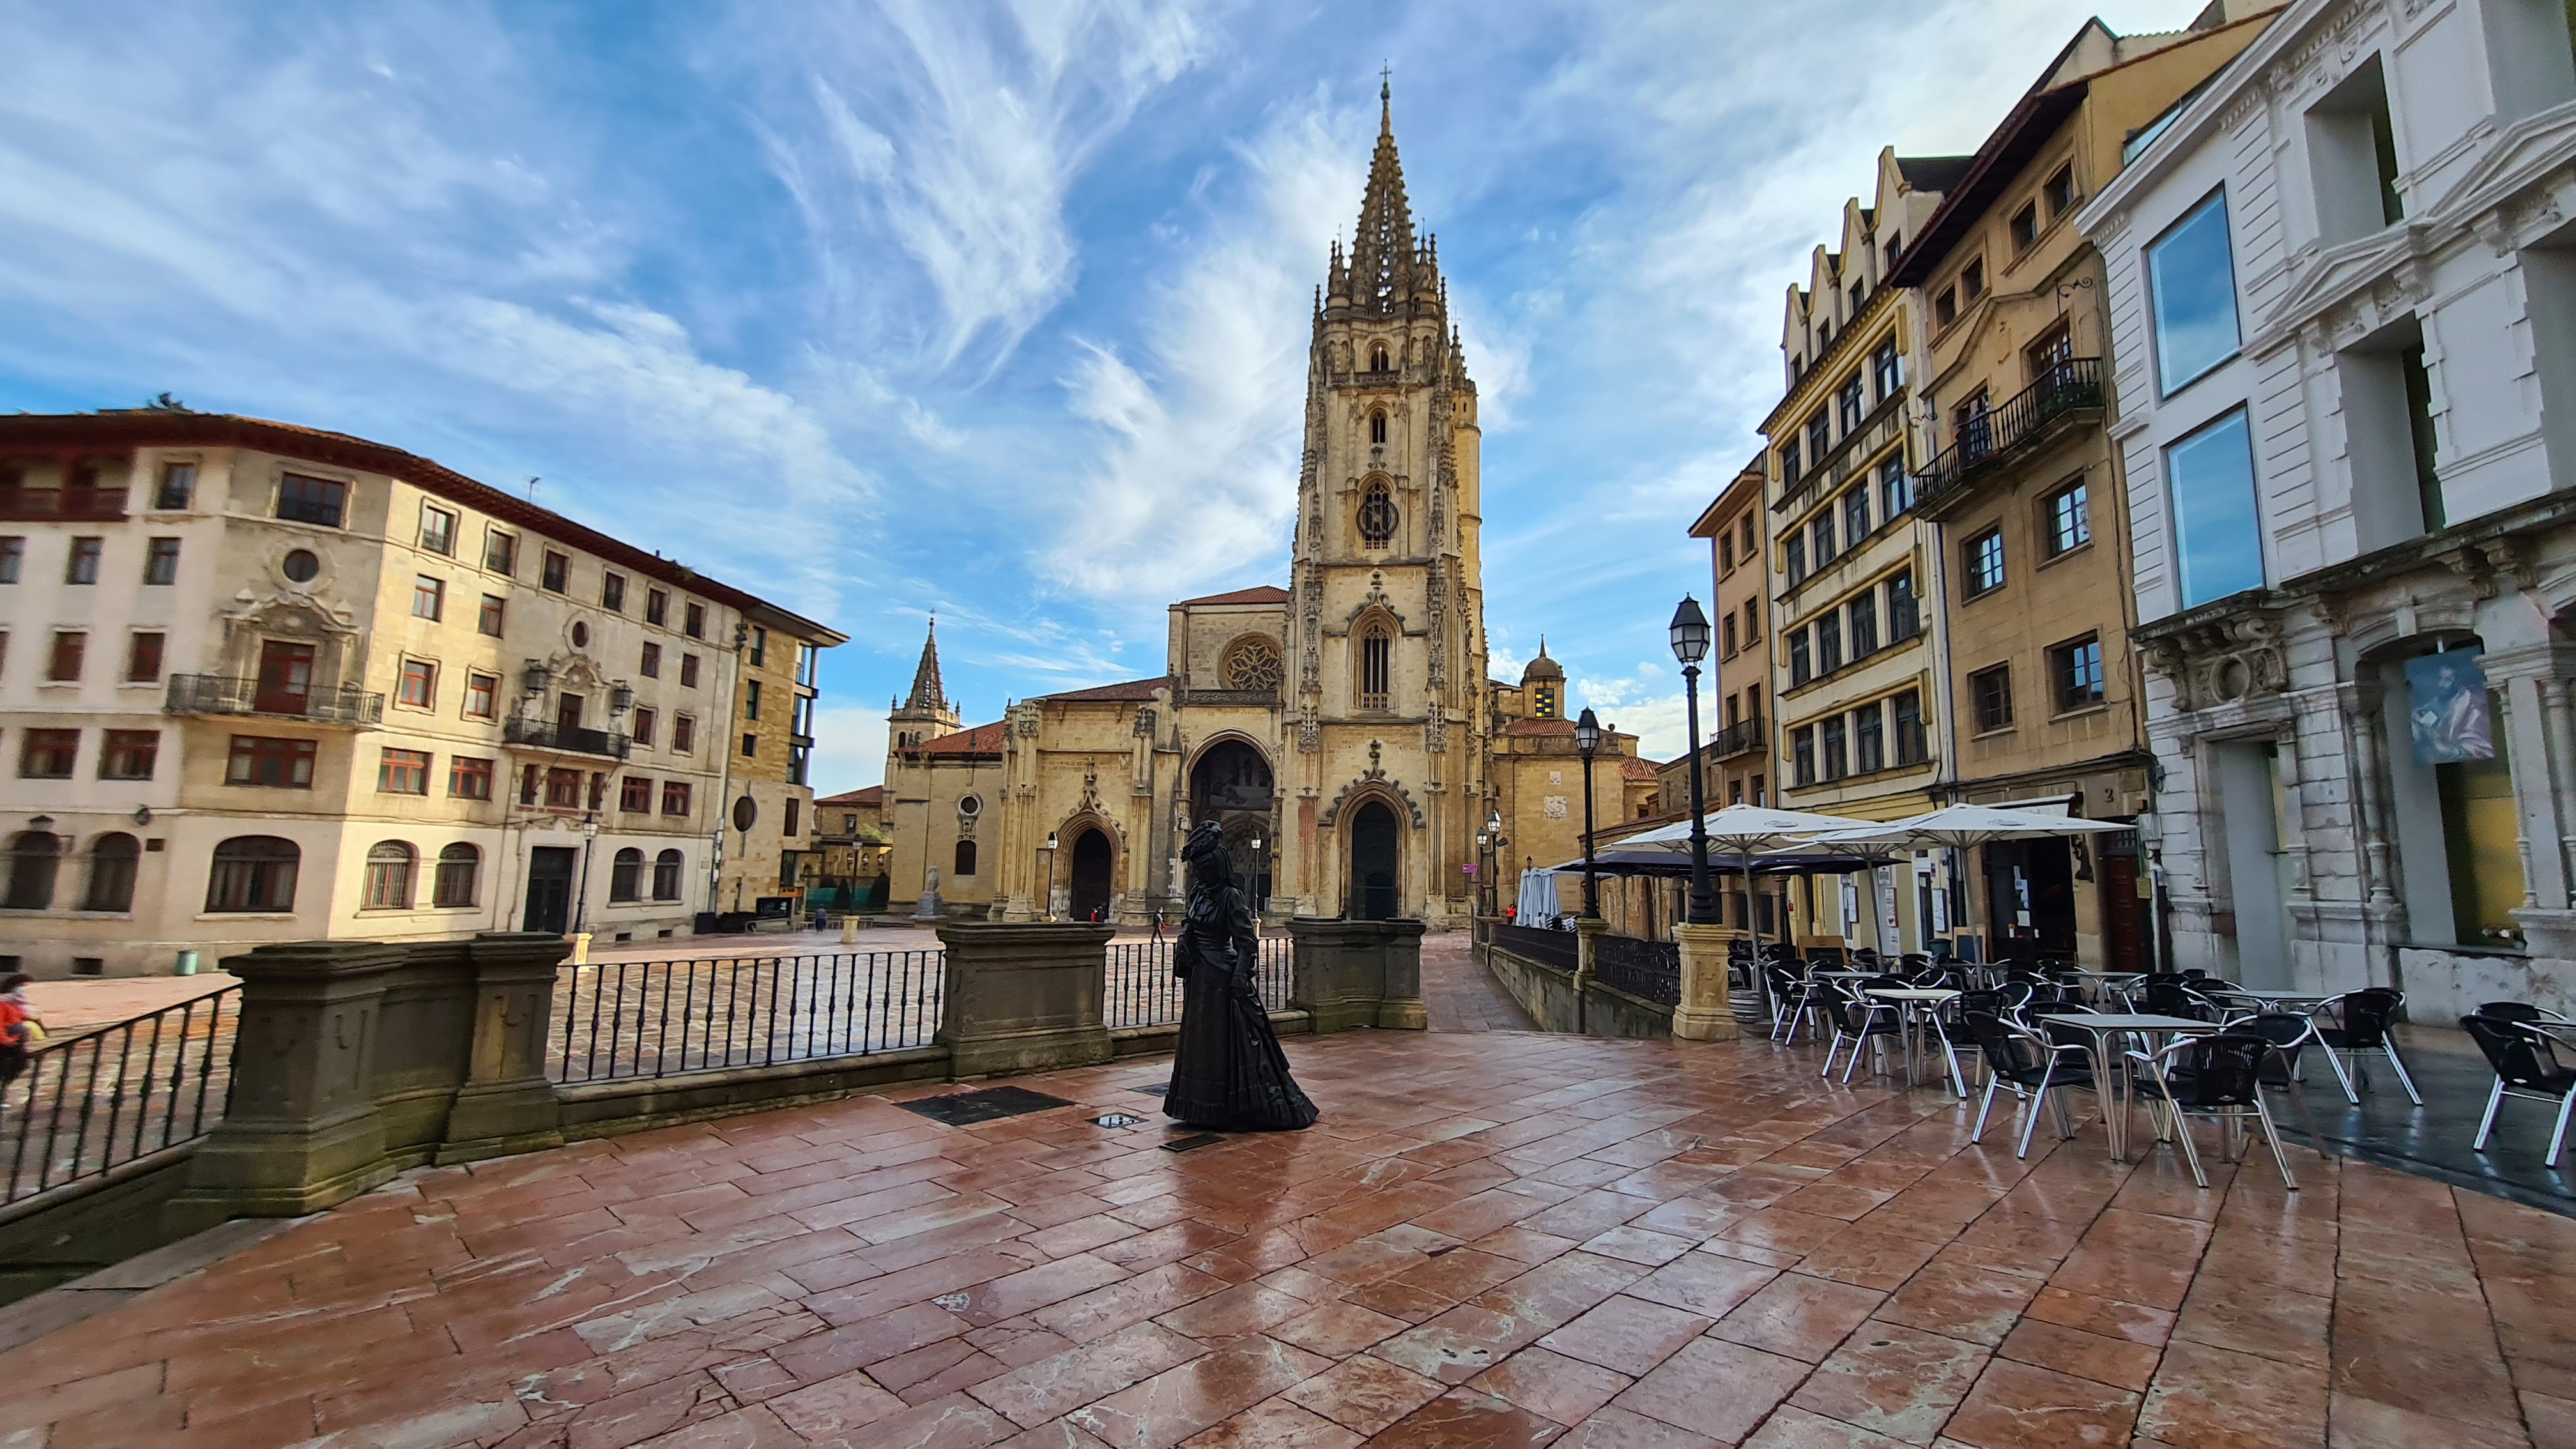 Foto panorámica desde lo alto de la plaza Alfonso II, en la que se ve en primer plano, la estatua de la Regenta, parte del museo de Bellas Artes, y de fondo la Catedral de Oviedo.